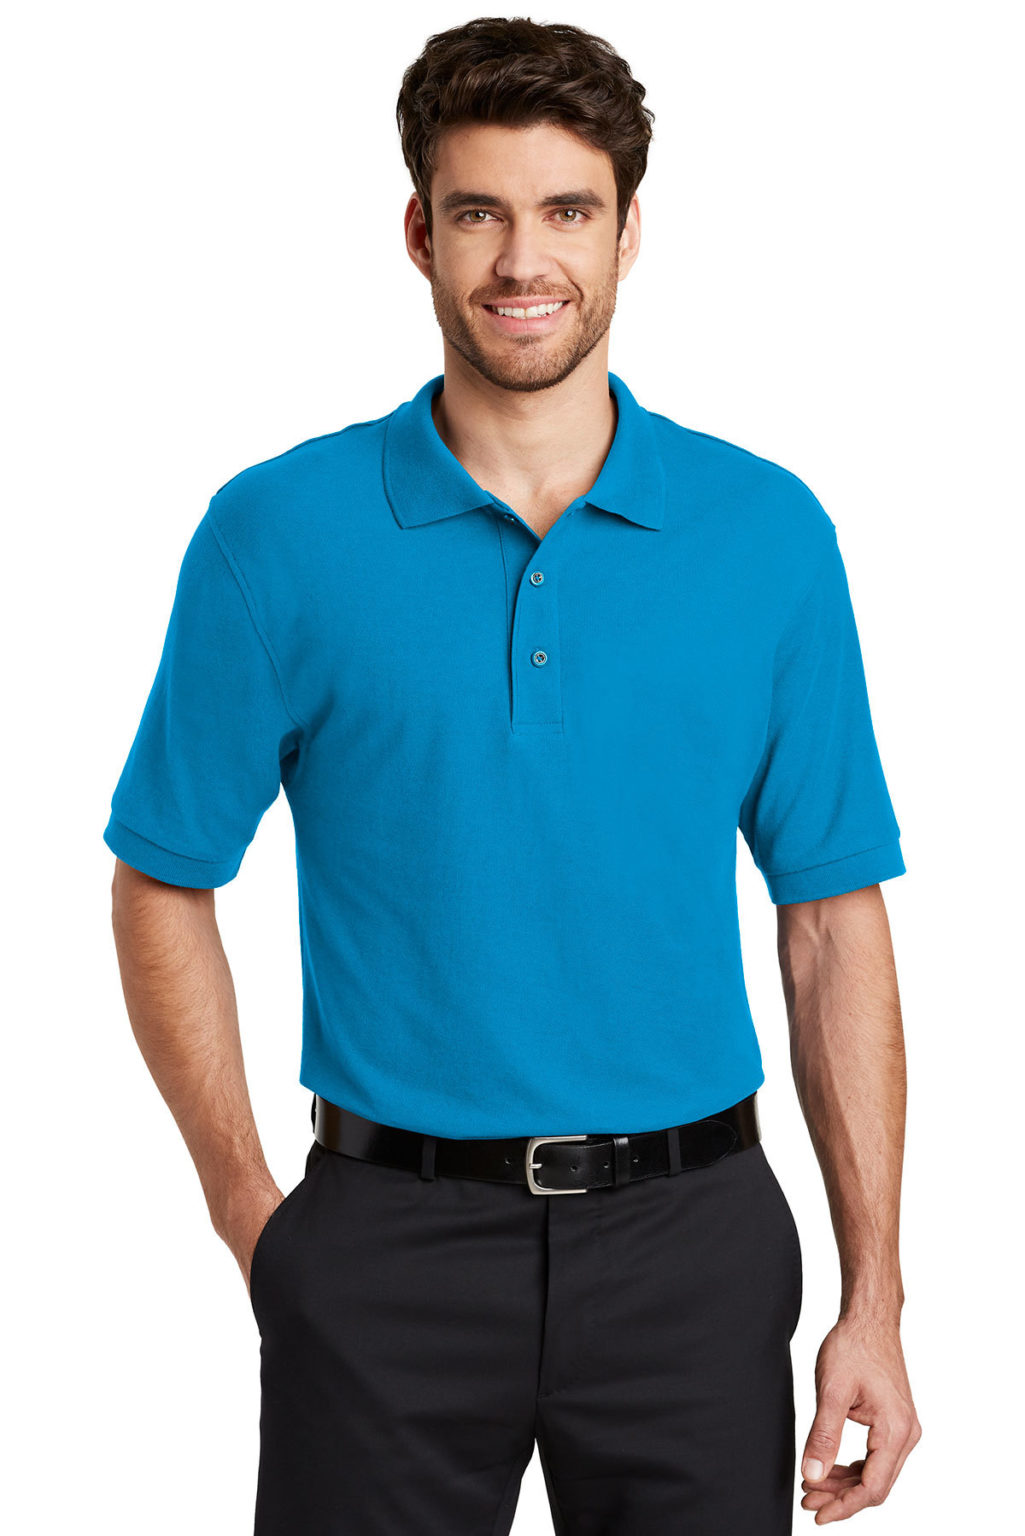 Men’s Port Authority Polo Shirt – #K500 | Central Uniforms